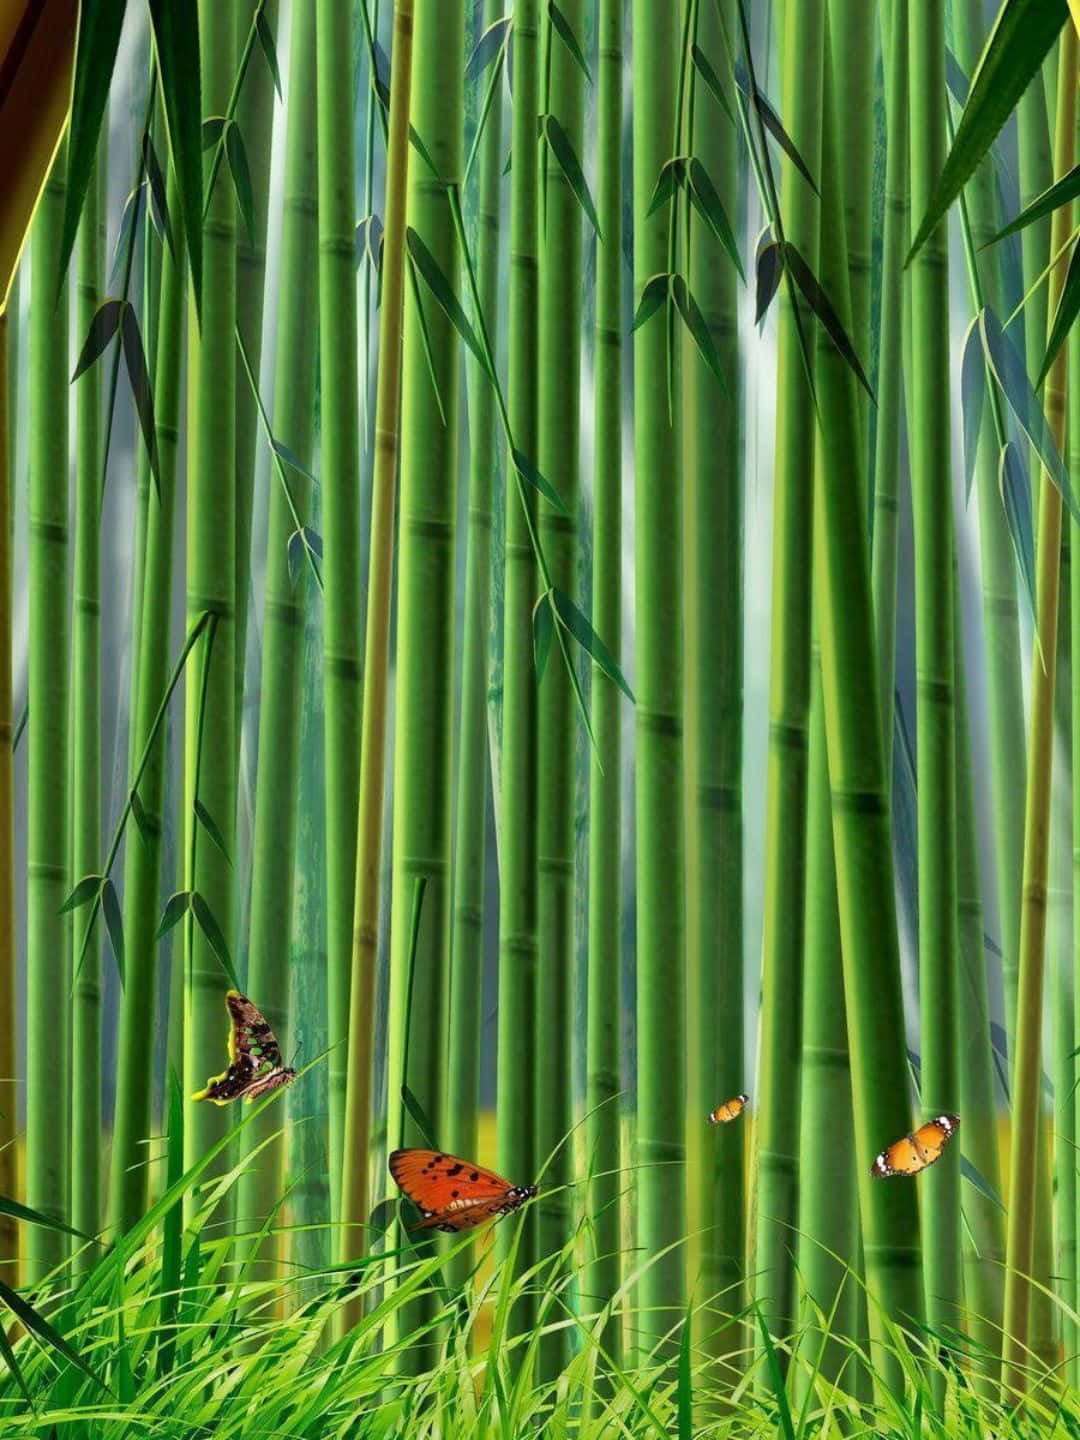 1440psfondo In Bambù Fanart Con Una Pittura Di Farfalle